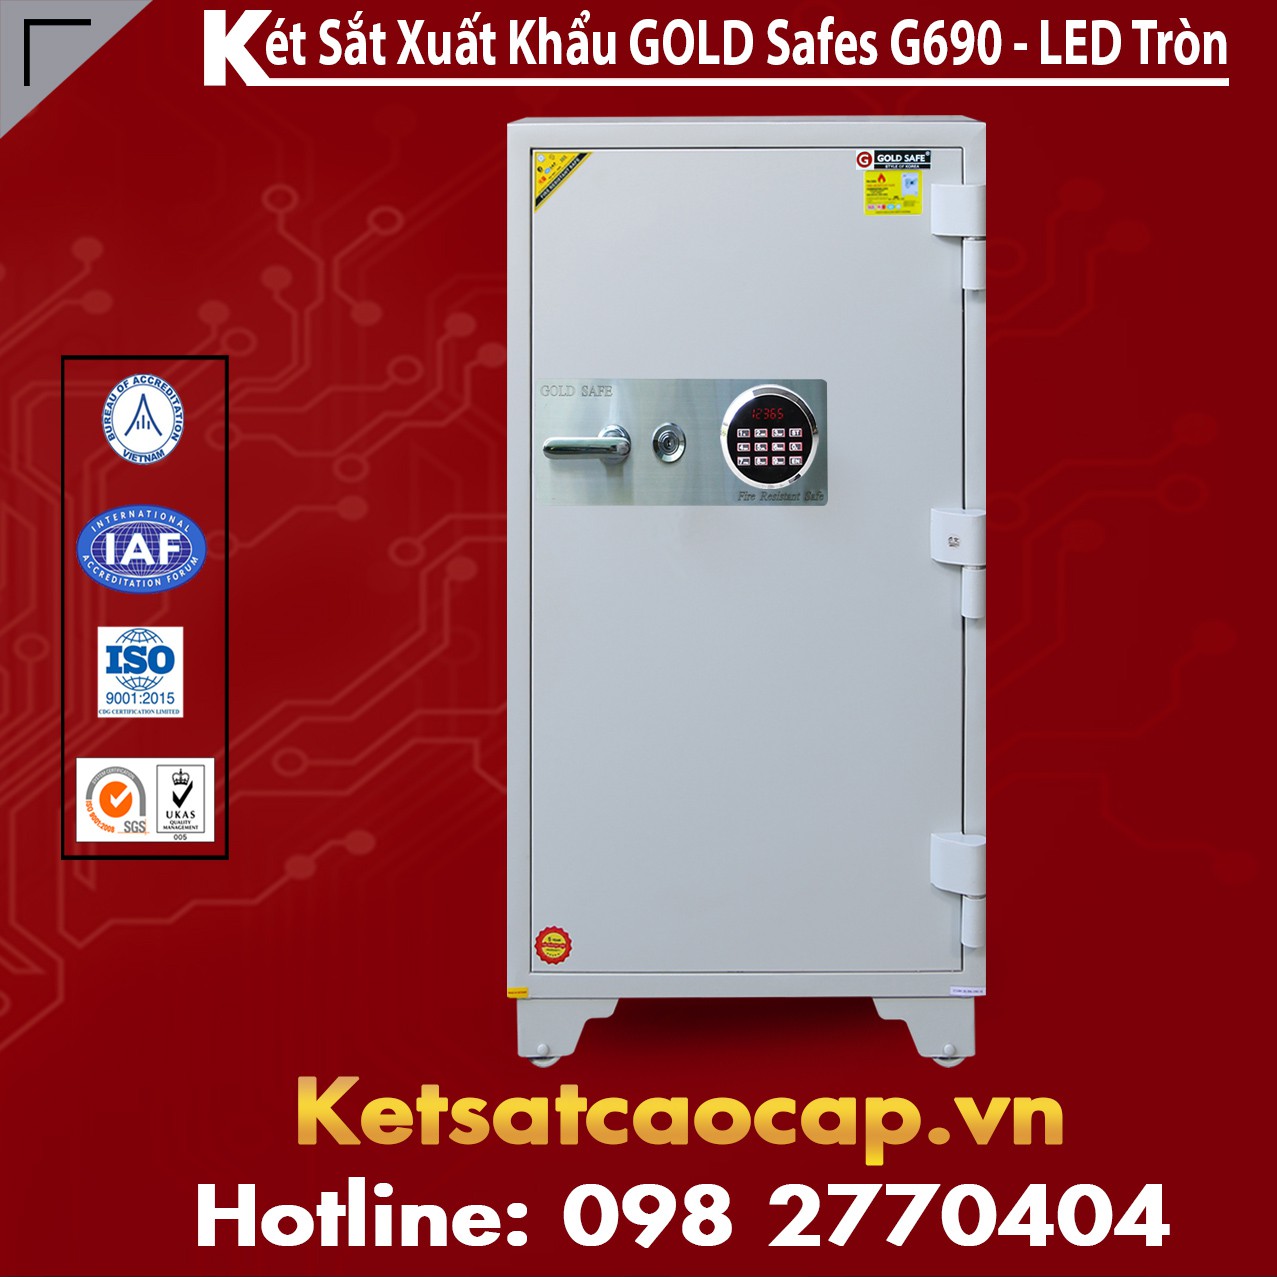 Két Sắt Phát Lộc GOLD SAFES GC690 LED Tròn